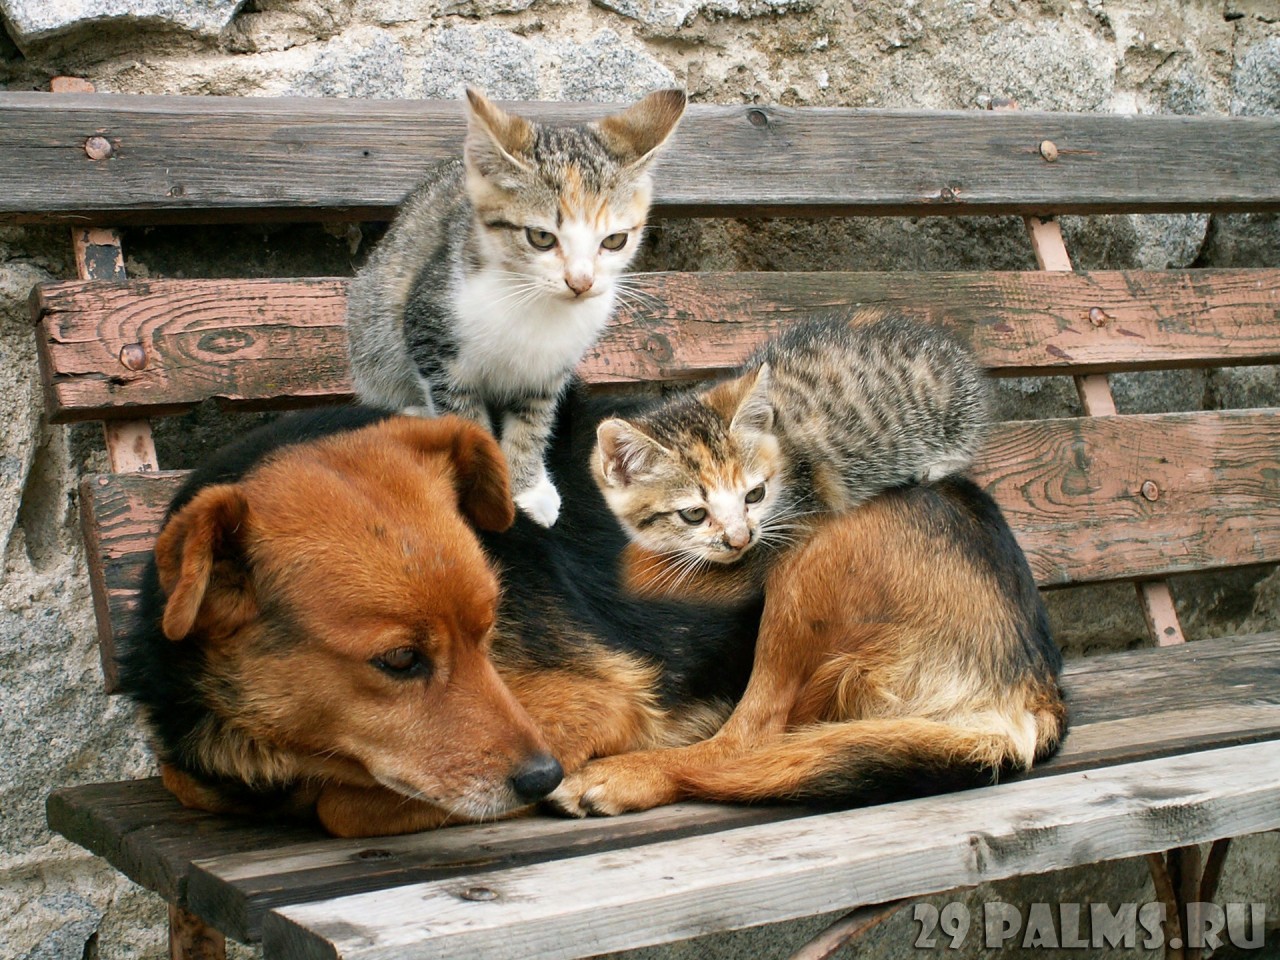 Как кошка с собакой. Часть 1 животные, коты, кошки, собаки, фото, юмор